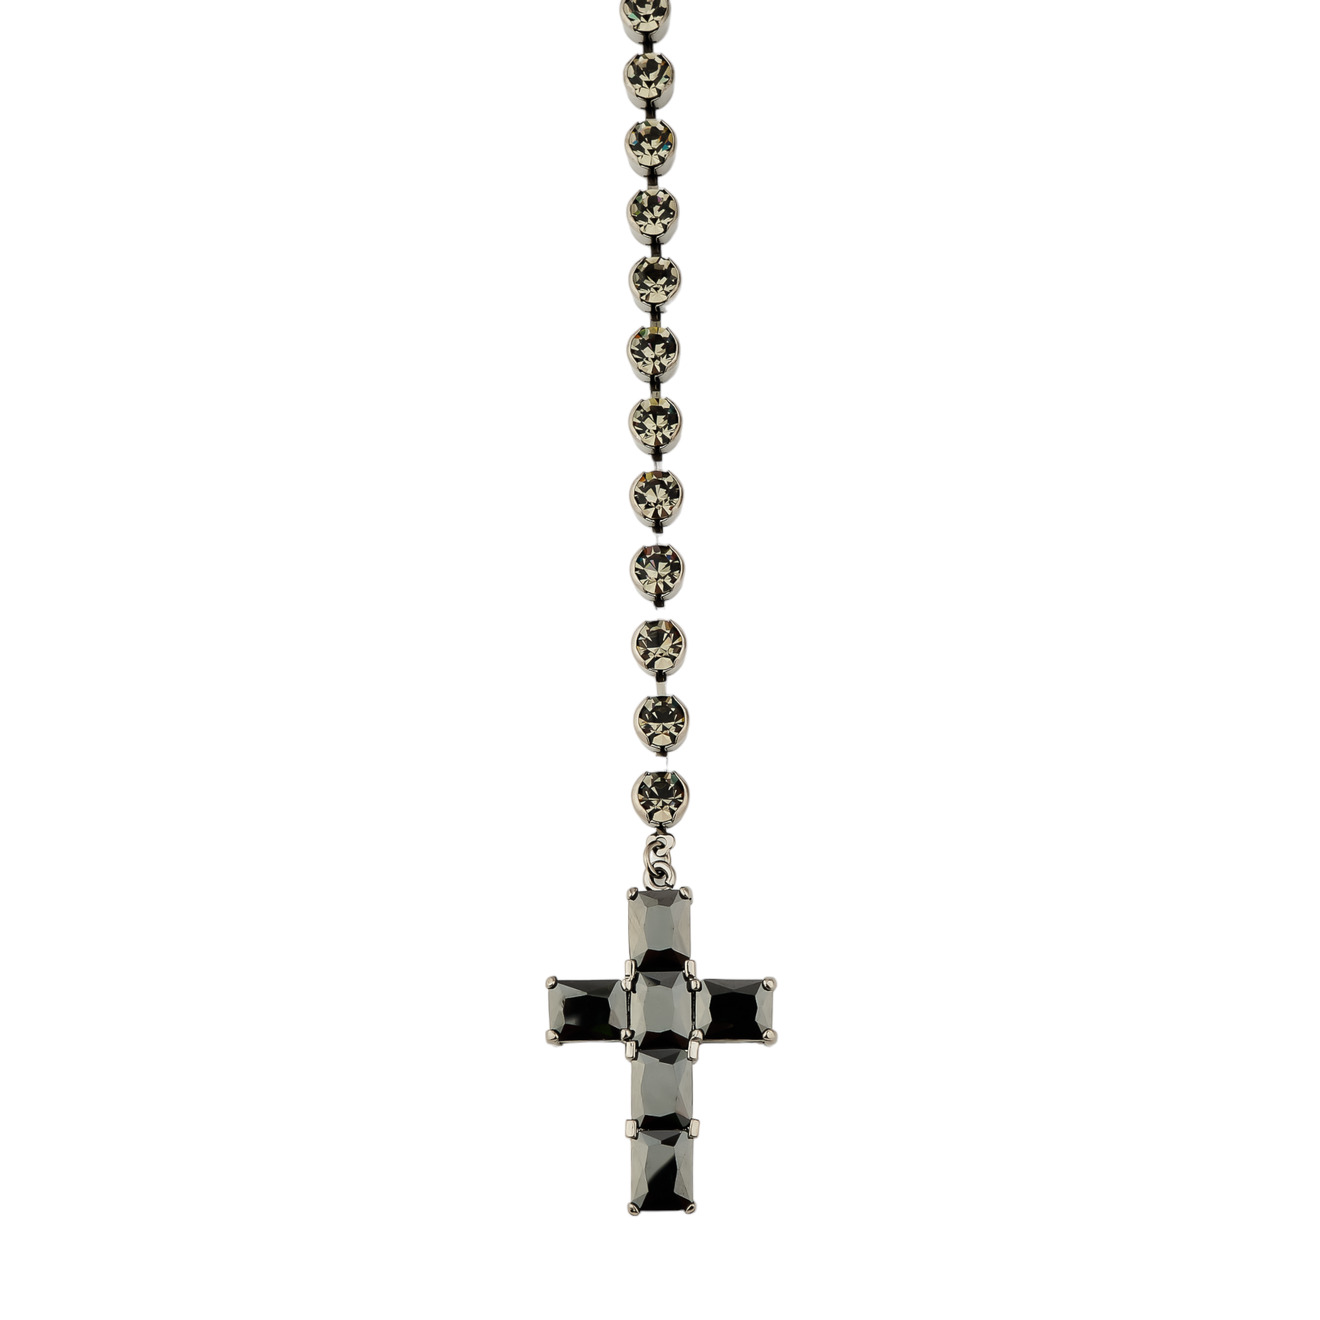 Herald Percy Сотуар с кристаллами и подвеской крестом черного цвета herald percy колье с большими черными кристаллами и подвеской крестом